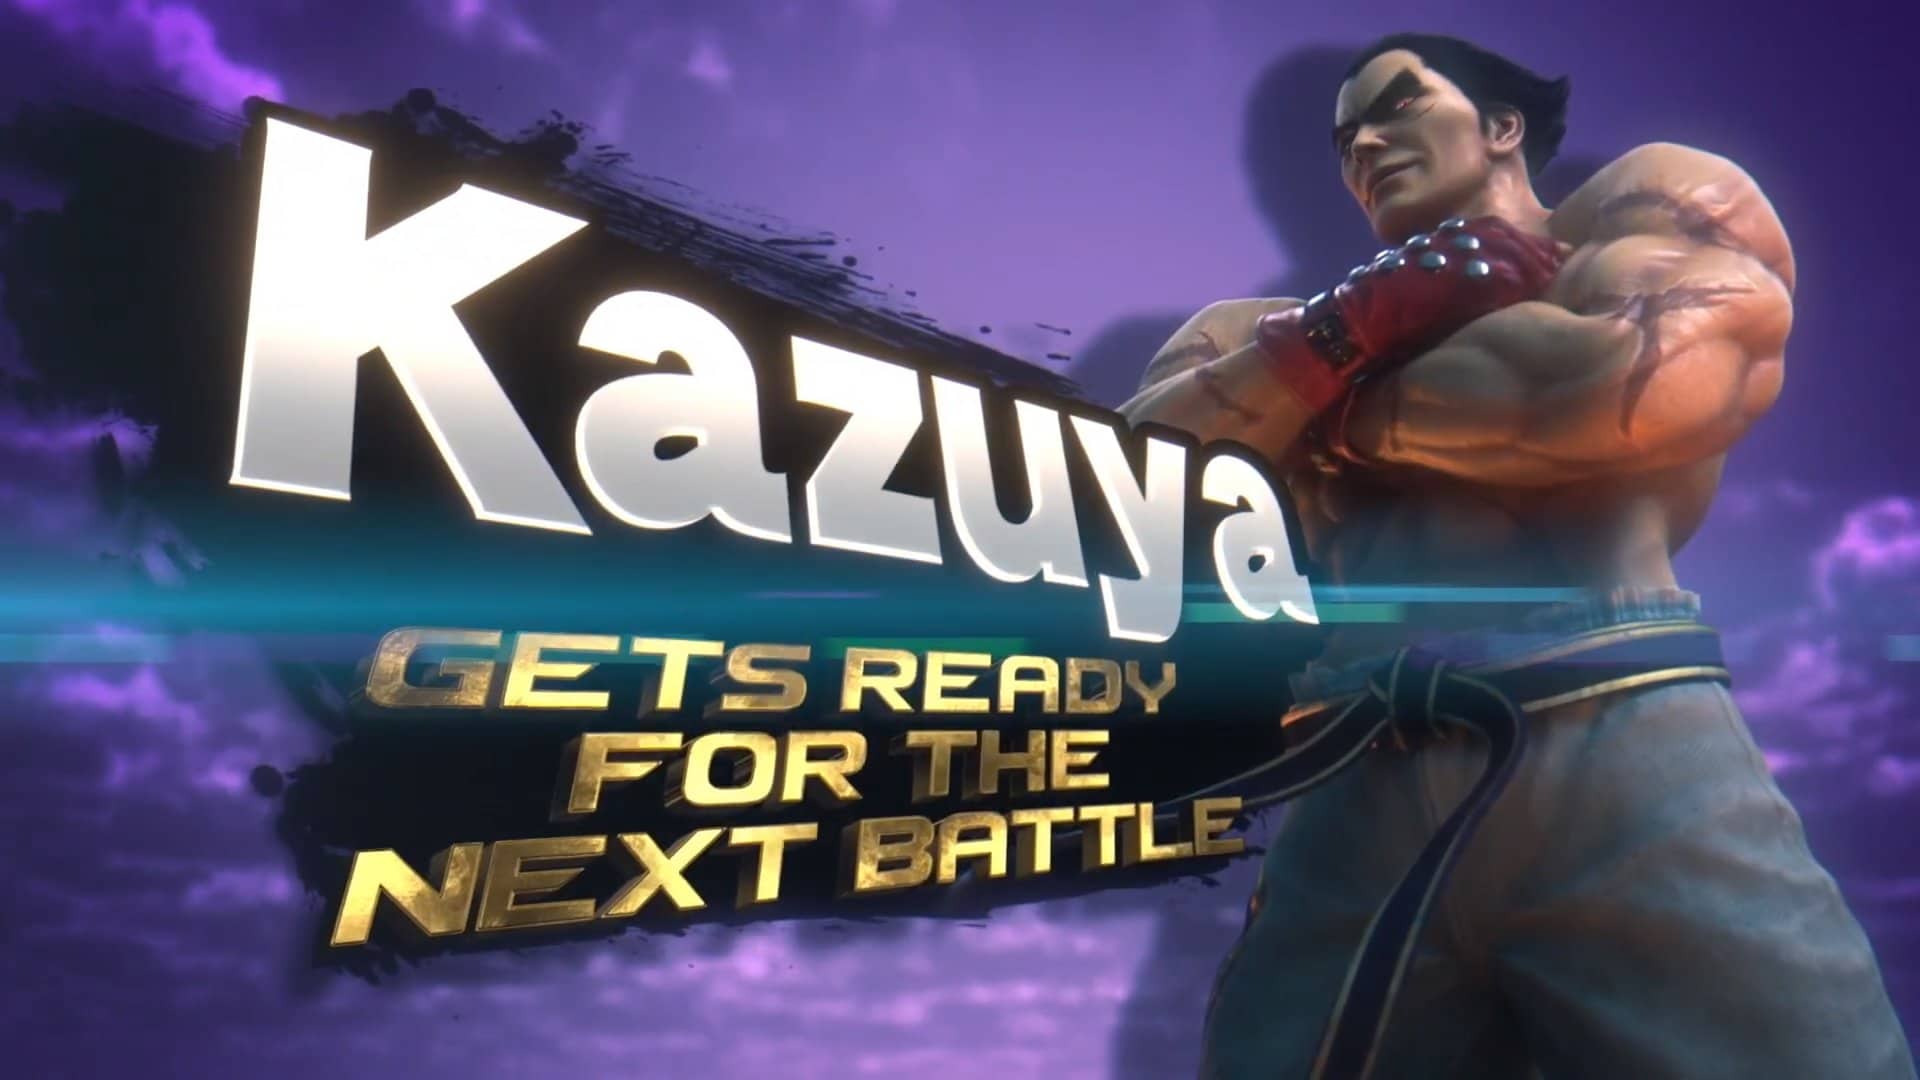 La versión 12.0.0 de Super Smash Bros. Ultimate llegará pronto, por lo que el lanzamiento de Kazuya es probable que sea inminente